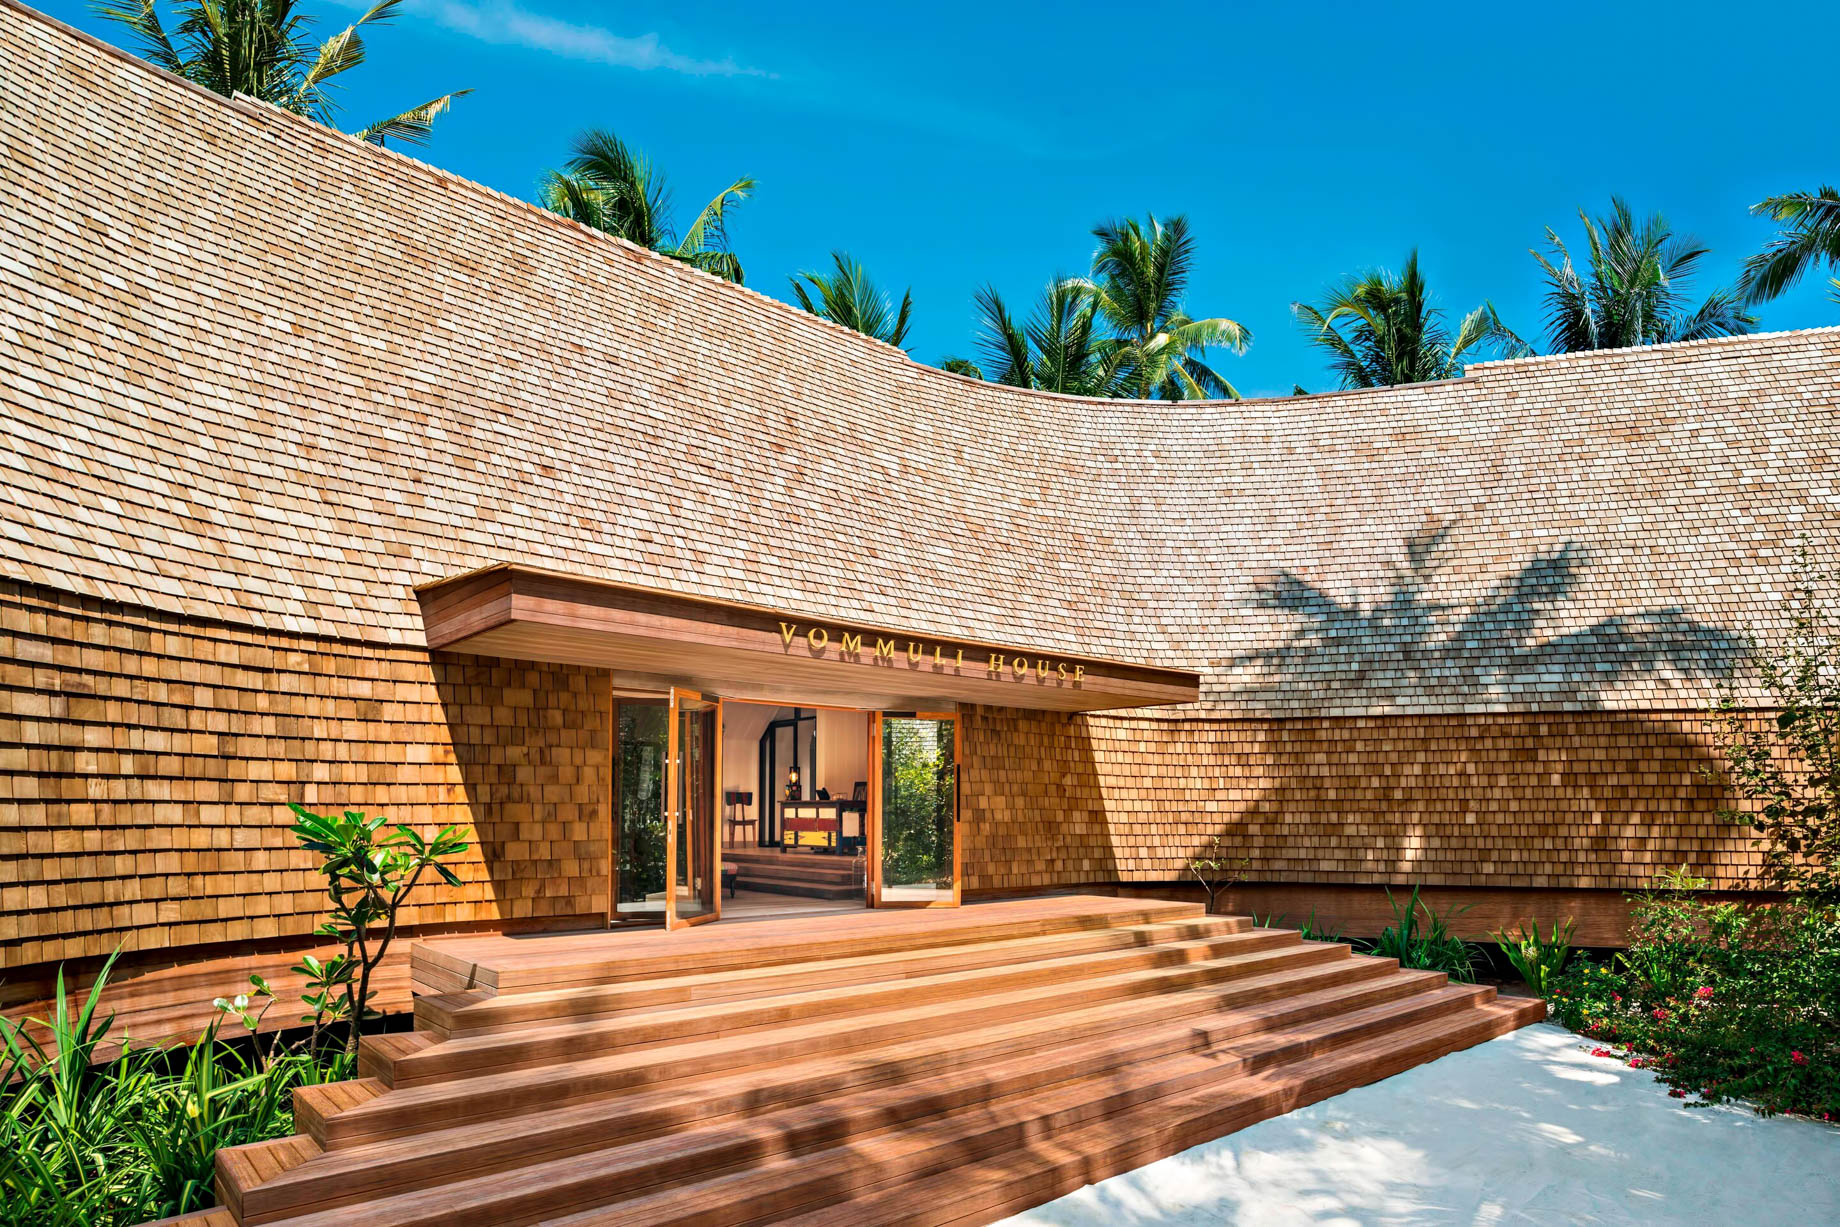 069-The-St.-Regis-Maldives-Vommuli-Luxury-Resort-Dhaalu-Atoll-Maldives-Vommuli-House-Entrance